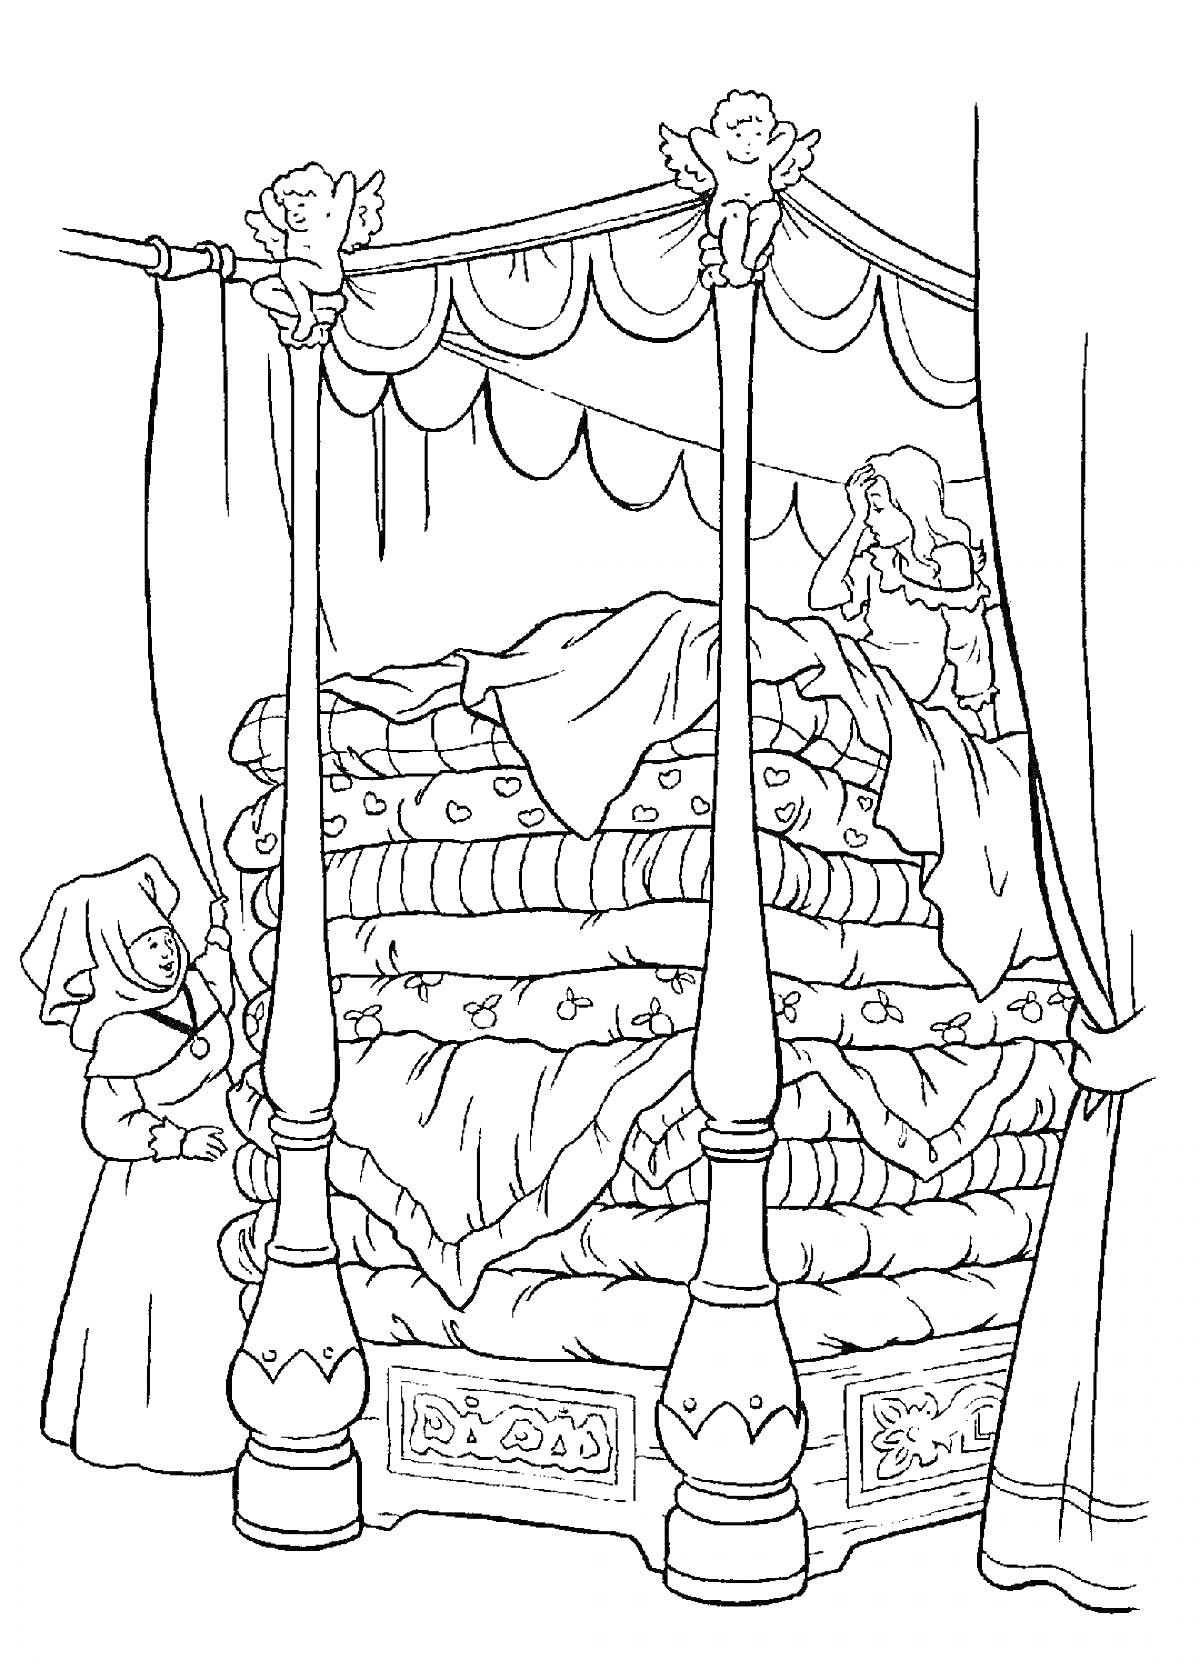 Раскраска Принцесса на горошине, девушка на кровати с множеством матрасов, кровать с балдахином, женщина у кровати